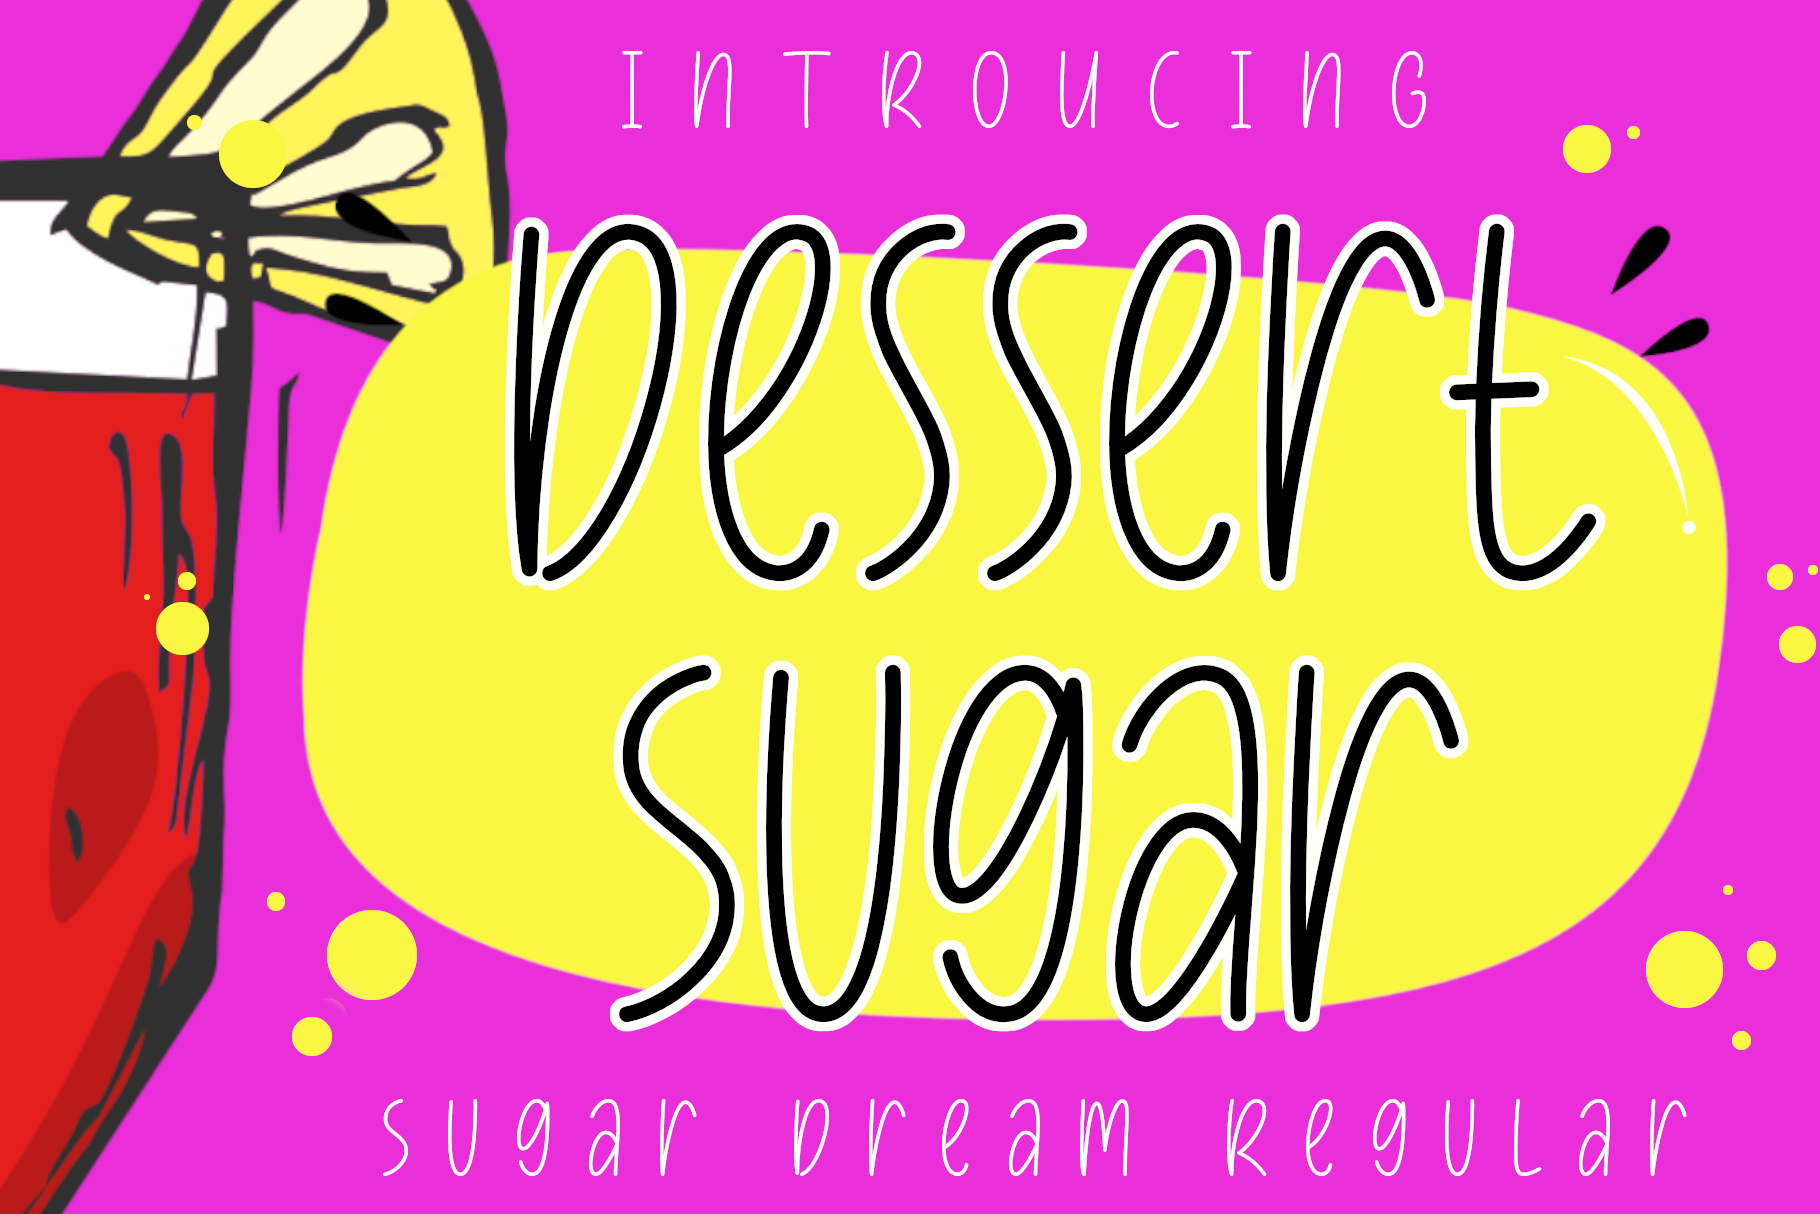 Dessert Sugar Regular